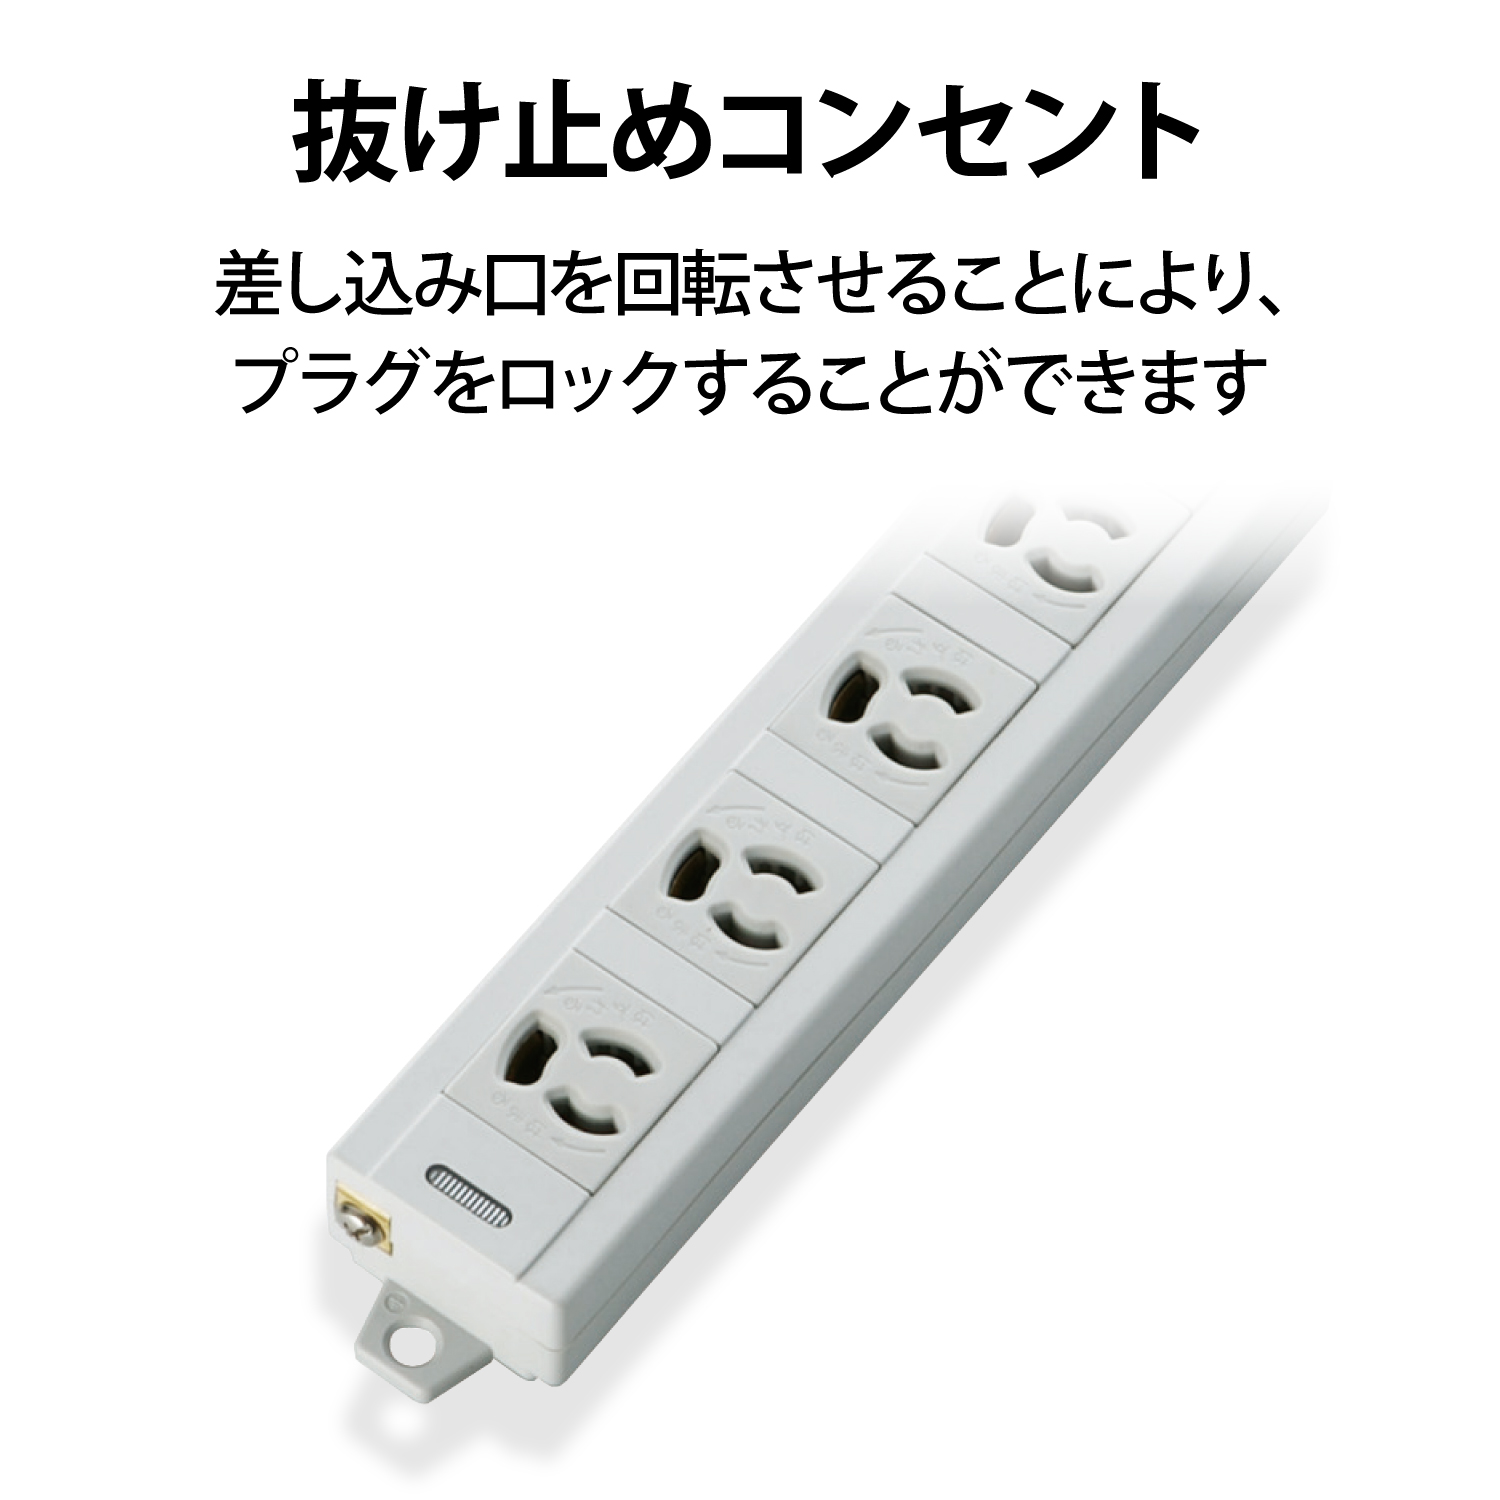 限定版 5個セット YAZAWA 3方向から挿せる9個口USBタップ ブラック H6BK11122UBKX5 電源タップ -  LITTLEHEROESDENTISTRY